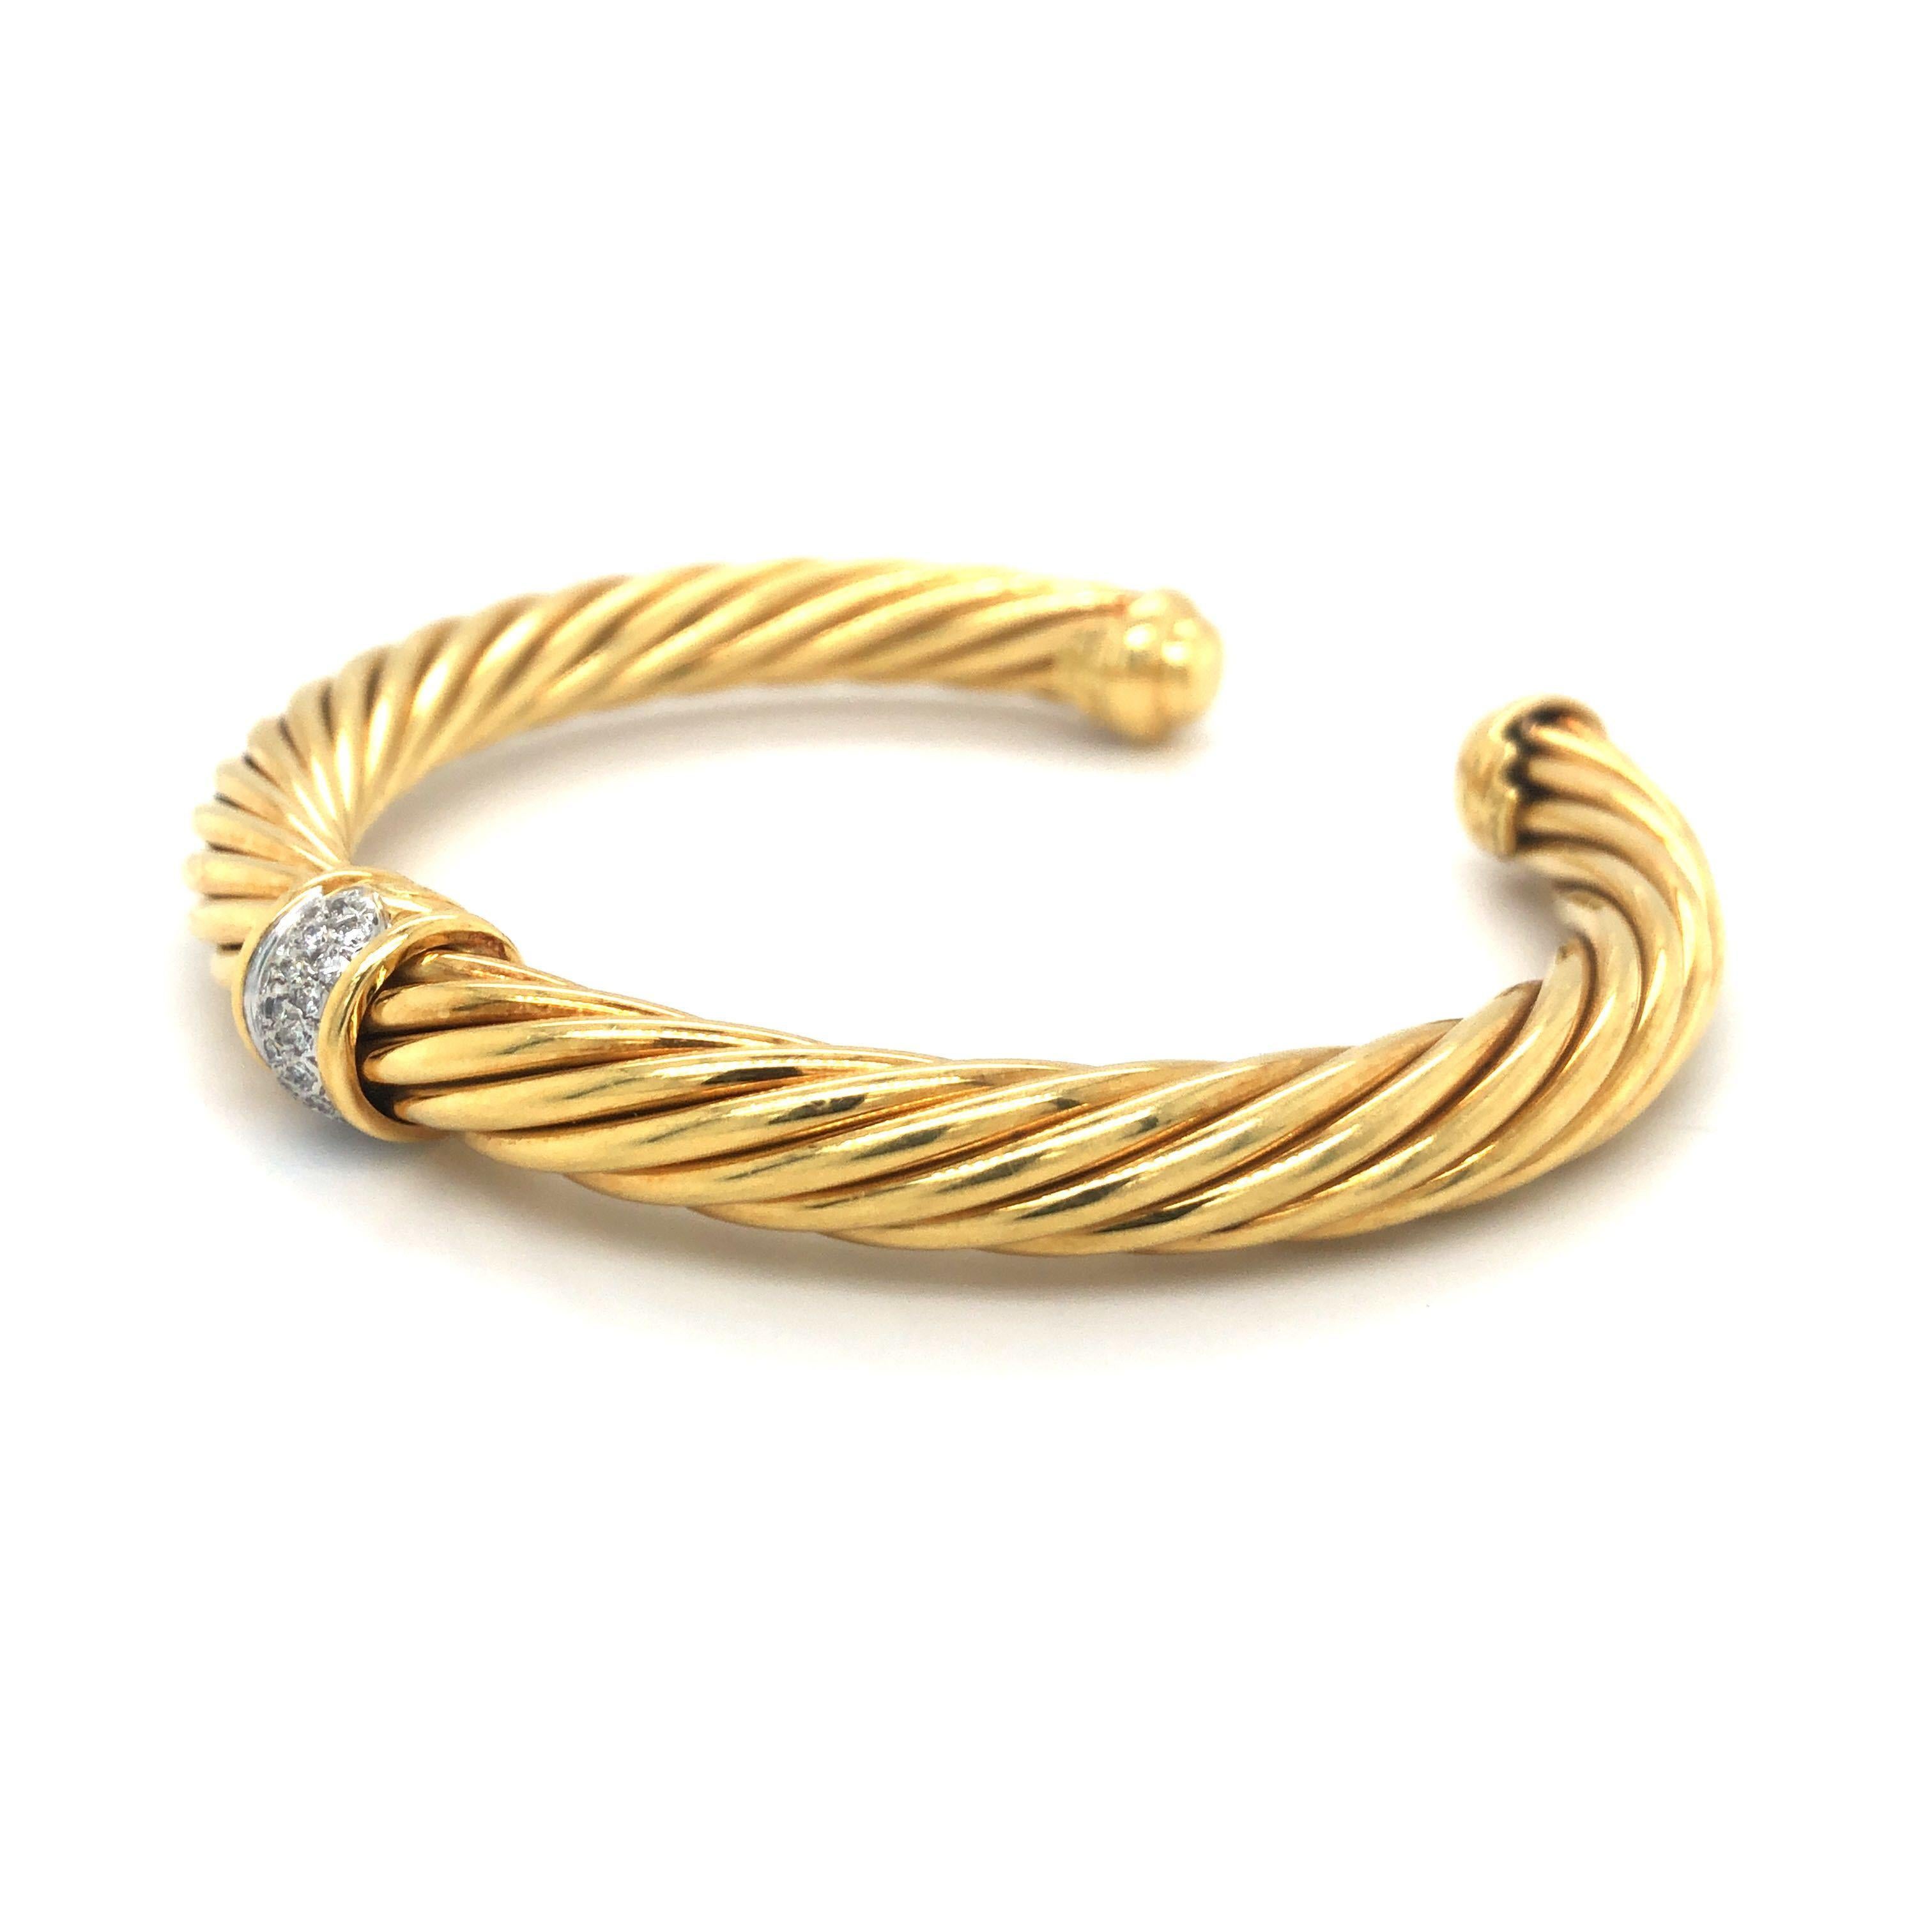 David Yurman 18k Yellow Gold and Diamond Twisted Cable Cuff Bracelet 6